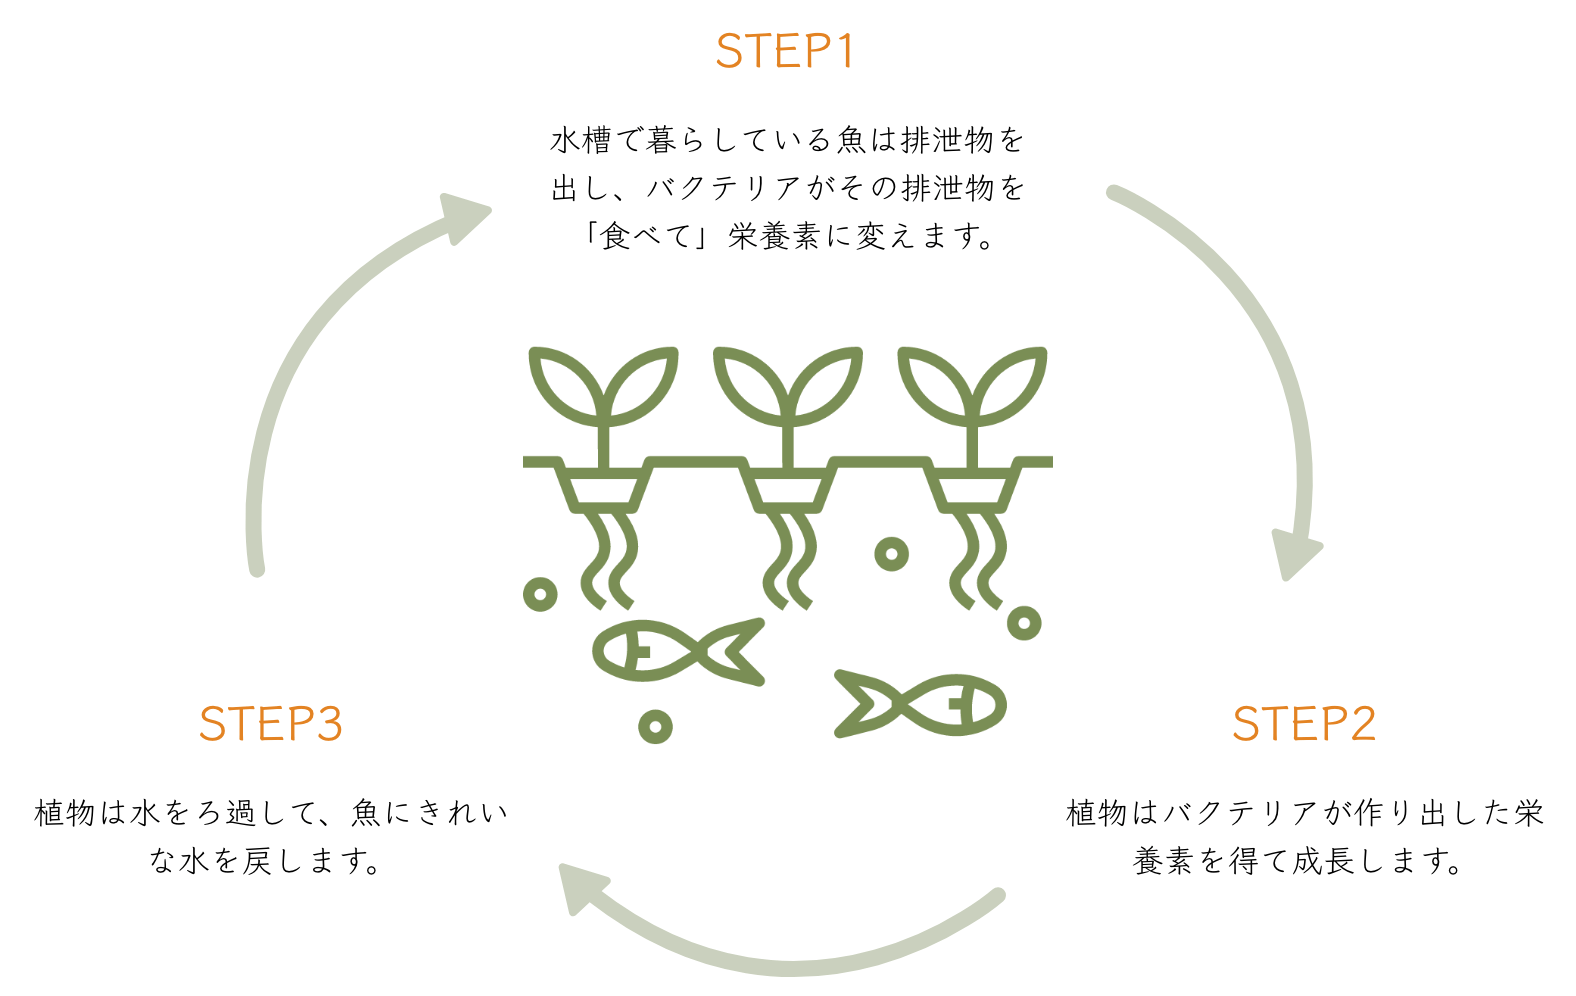 
        STEP1:水槽で暮らしている魚は排泄物を出し、
        バクテリアがその排泄物を「食べて」栄養素に変えます。
        STEP2:植物はバクテリアが作り出した栄養素を得て成長します。
        STEP3:植物は水をろ過して、魚にきれいな水を戻します。
        